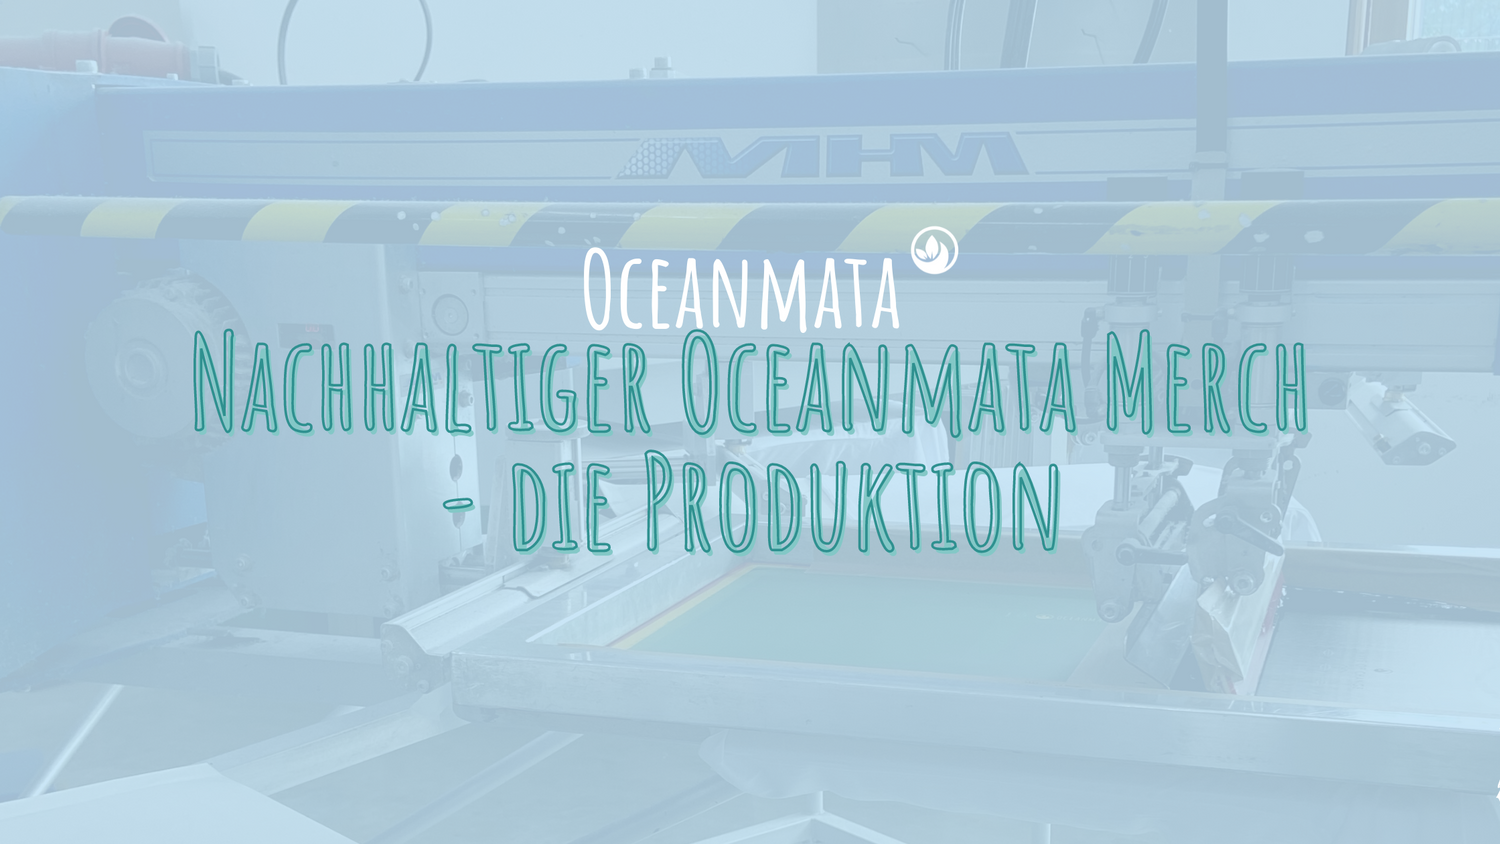 Nachhaltiger Oceanmata Merch - die Produktion